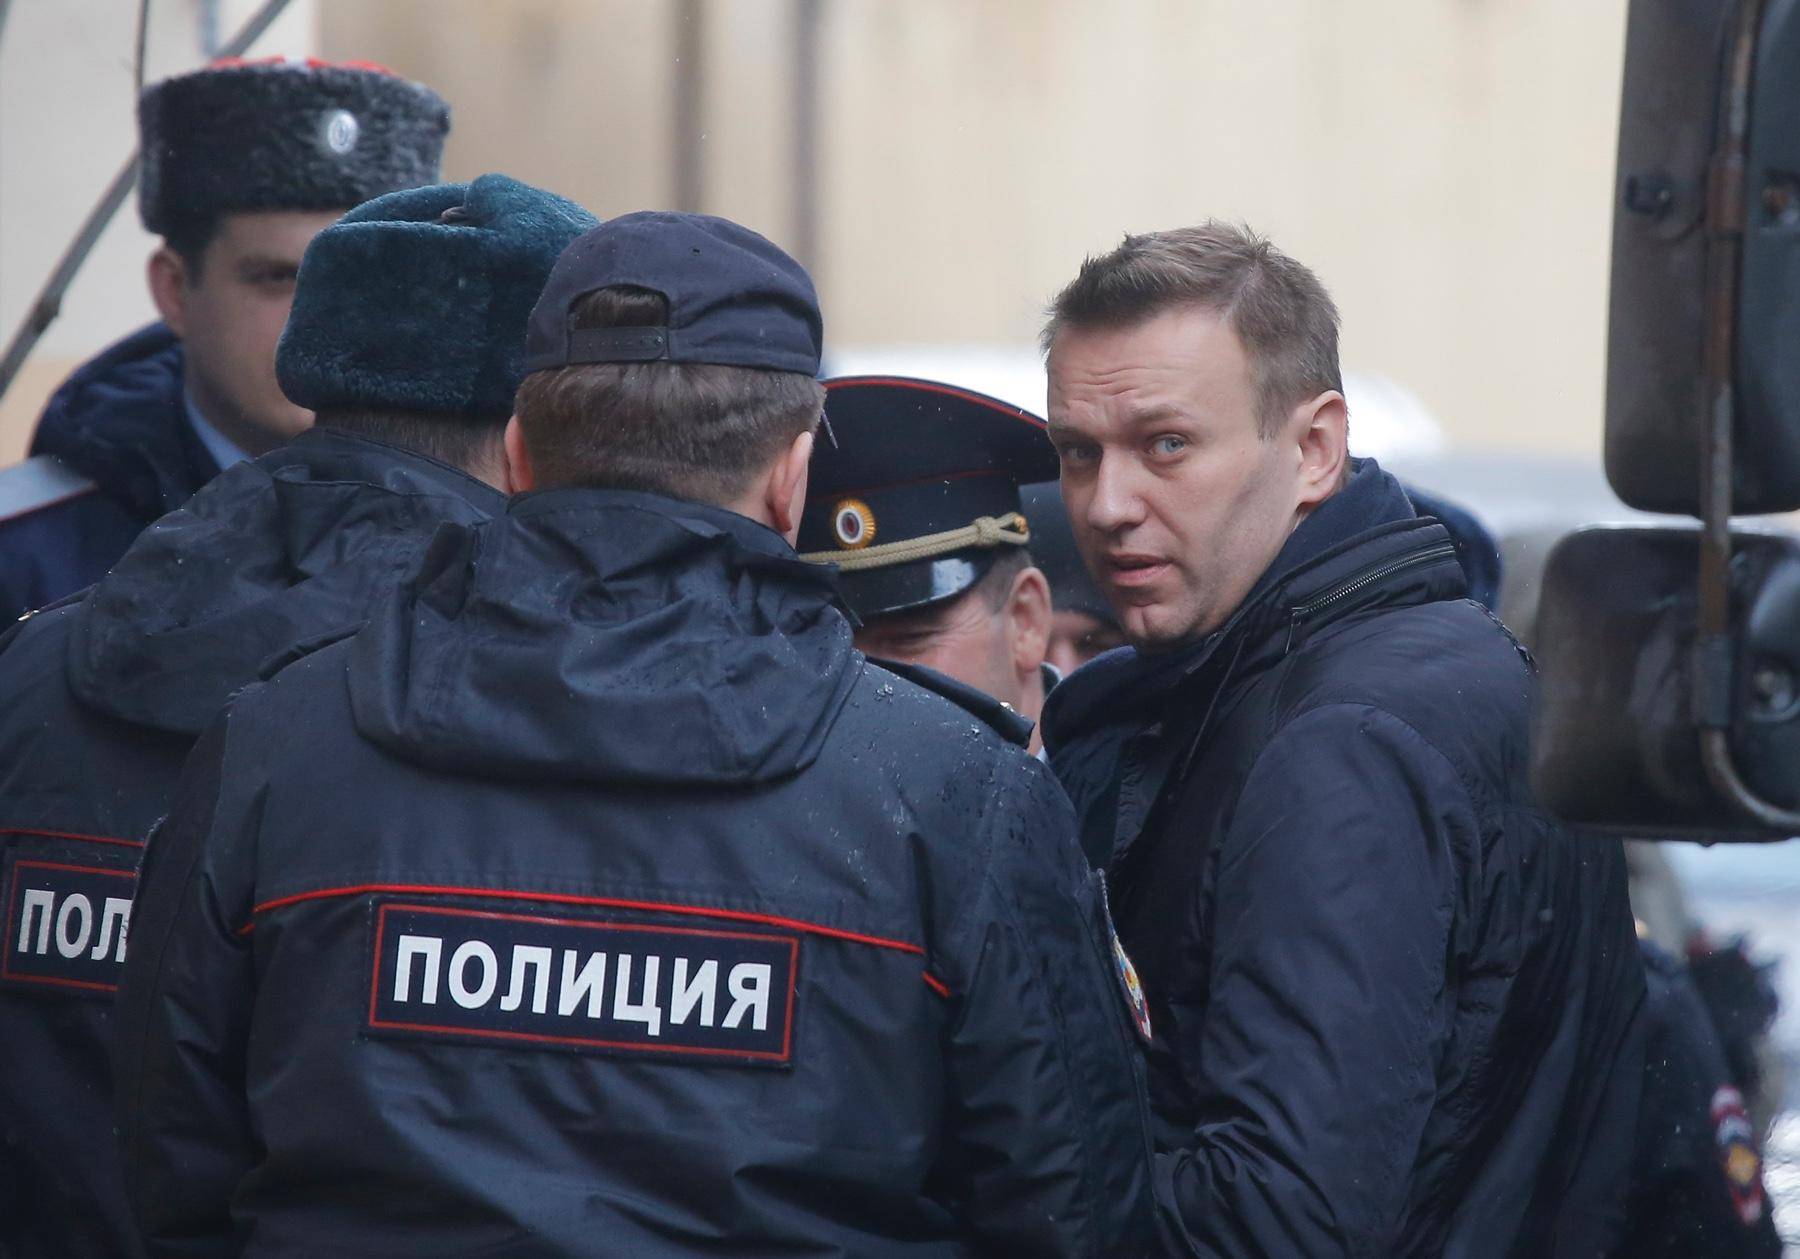 «Врач сказал, что „некоторые вещи конфиденциальны“, и увел полицейских в другую комнату», — пресс-секретарь ФБК о ситуации с Навальным